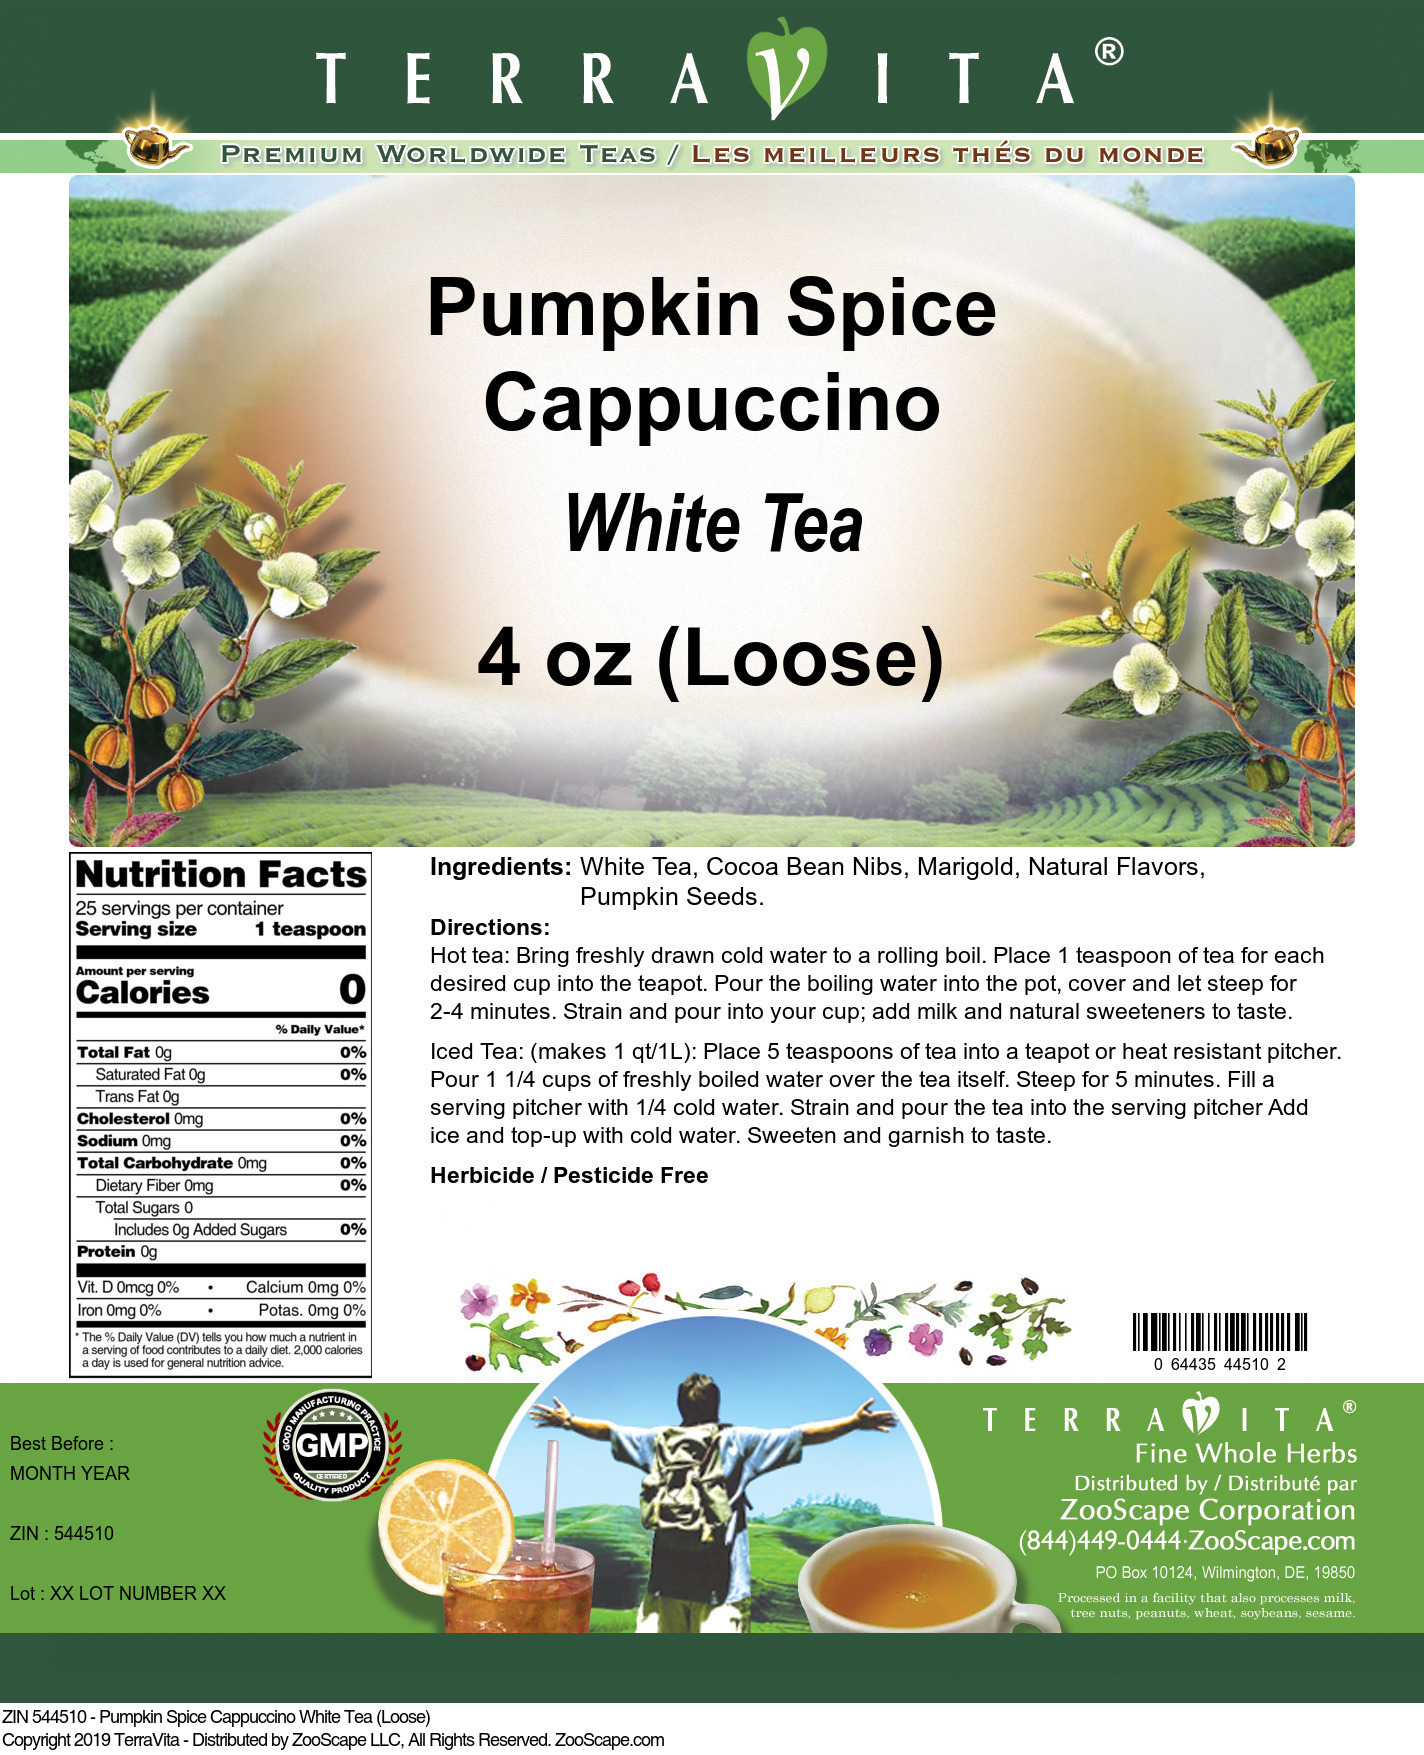 Pumpkin Spice Cappuccino White Tea (Loose) - Label